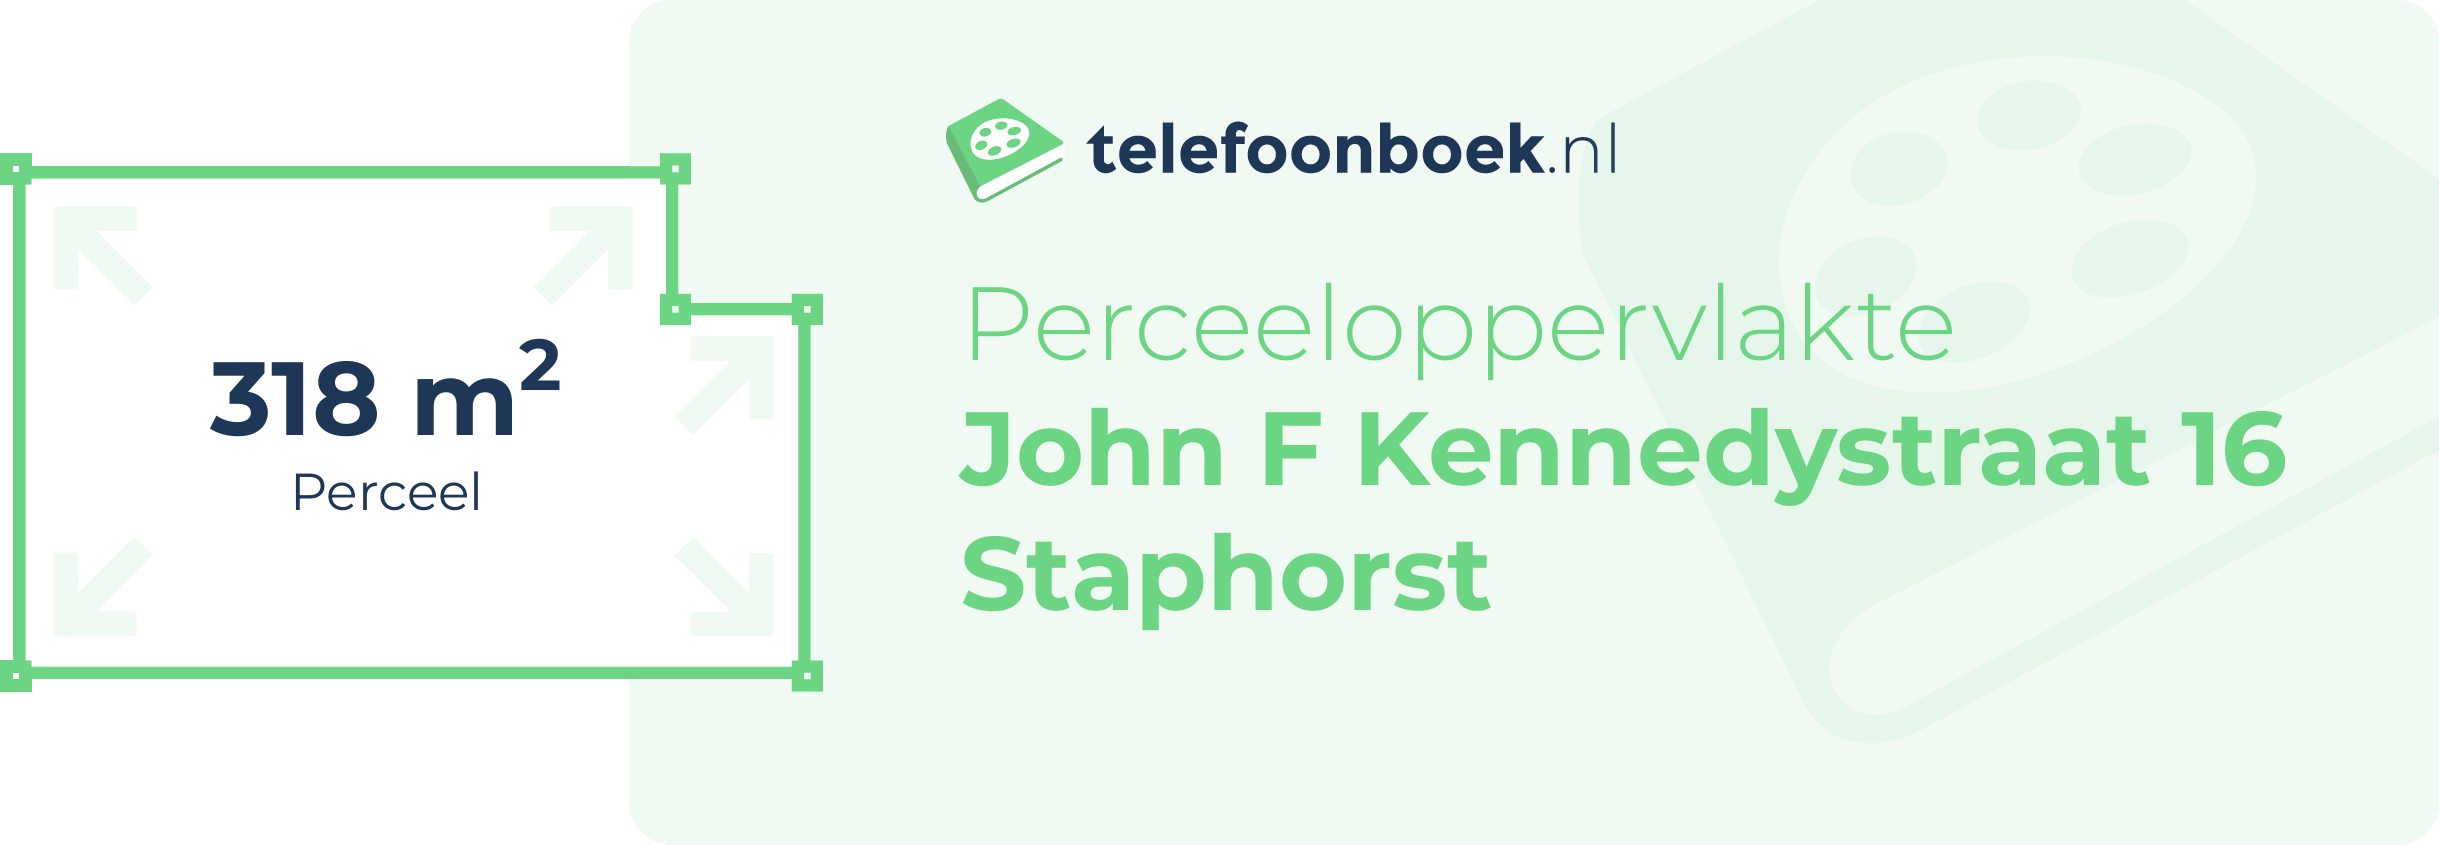 Perceeloppervlakte John F Kennedystraat 16 Staphorst